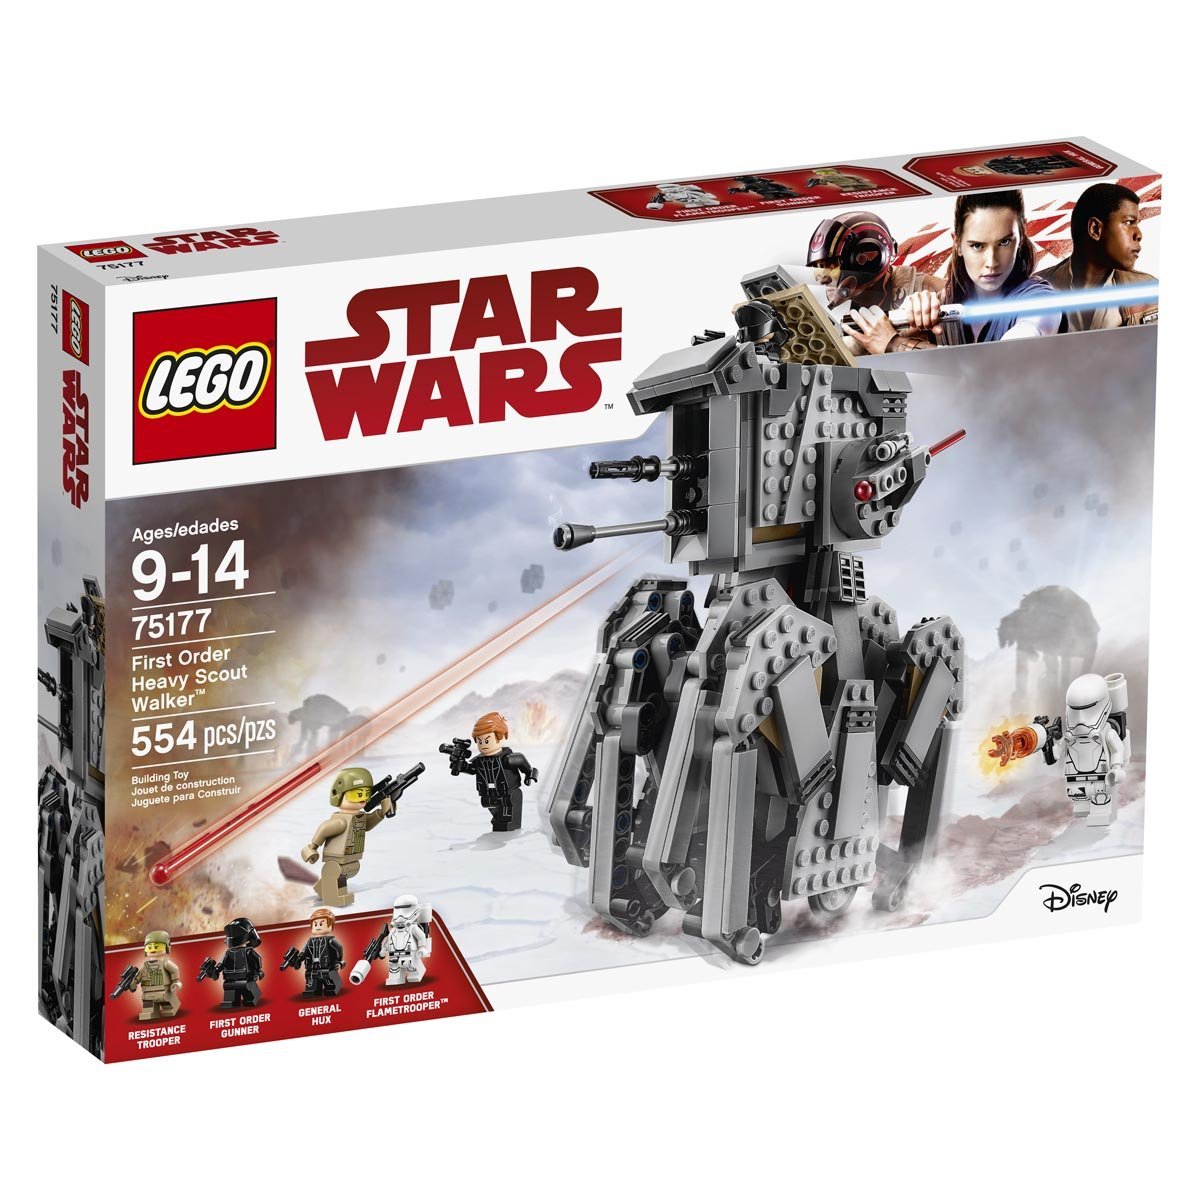 Star Wars - First Order Heavy Scout Walker Lego